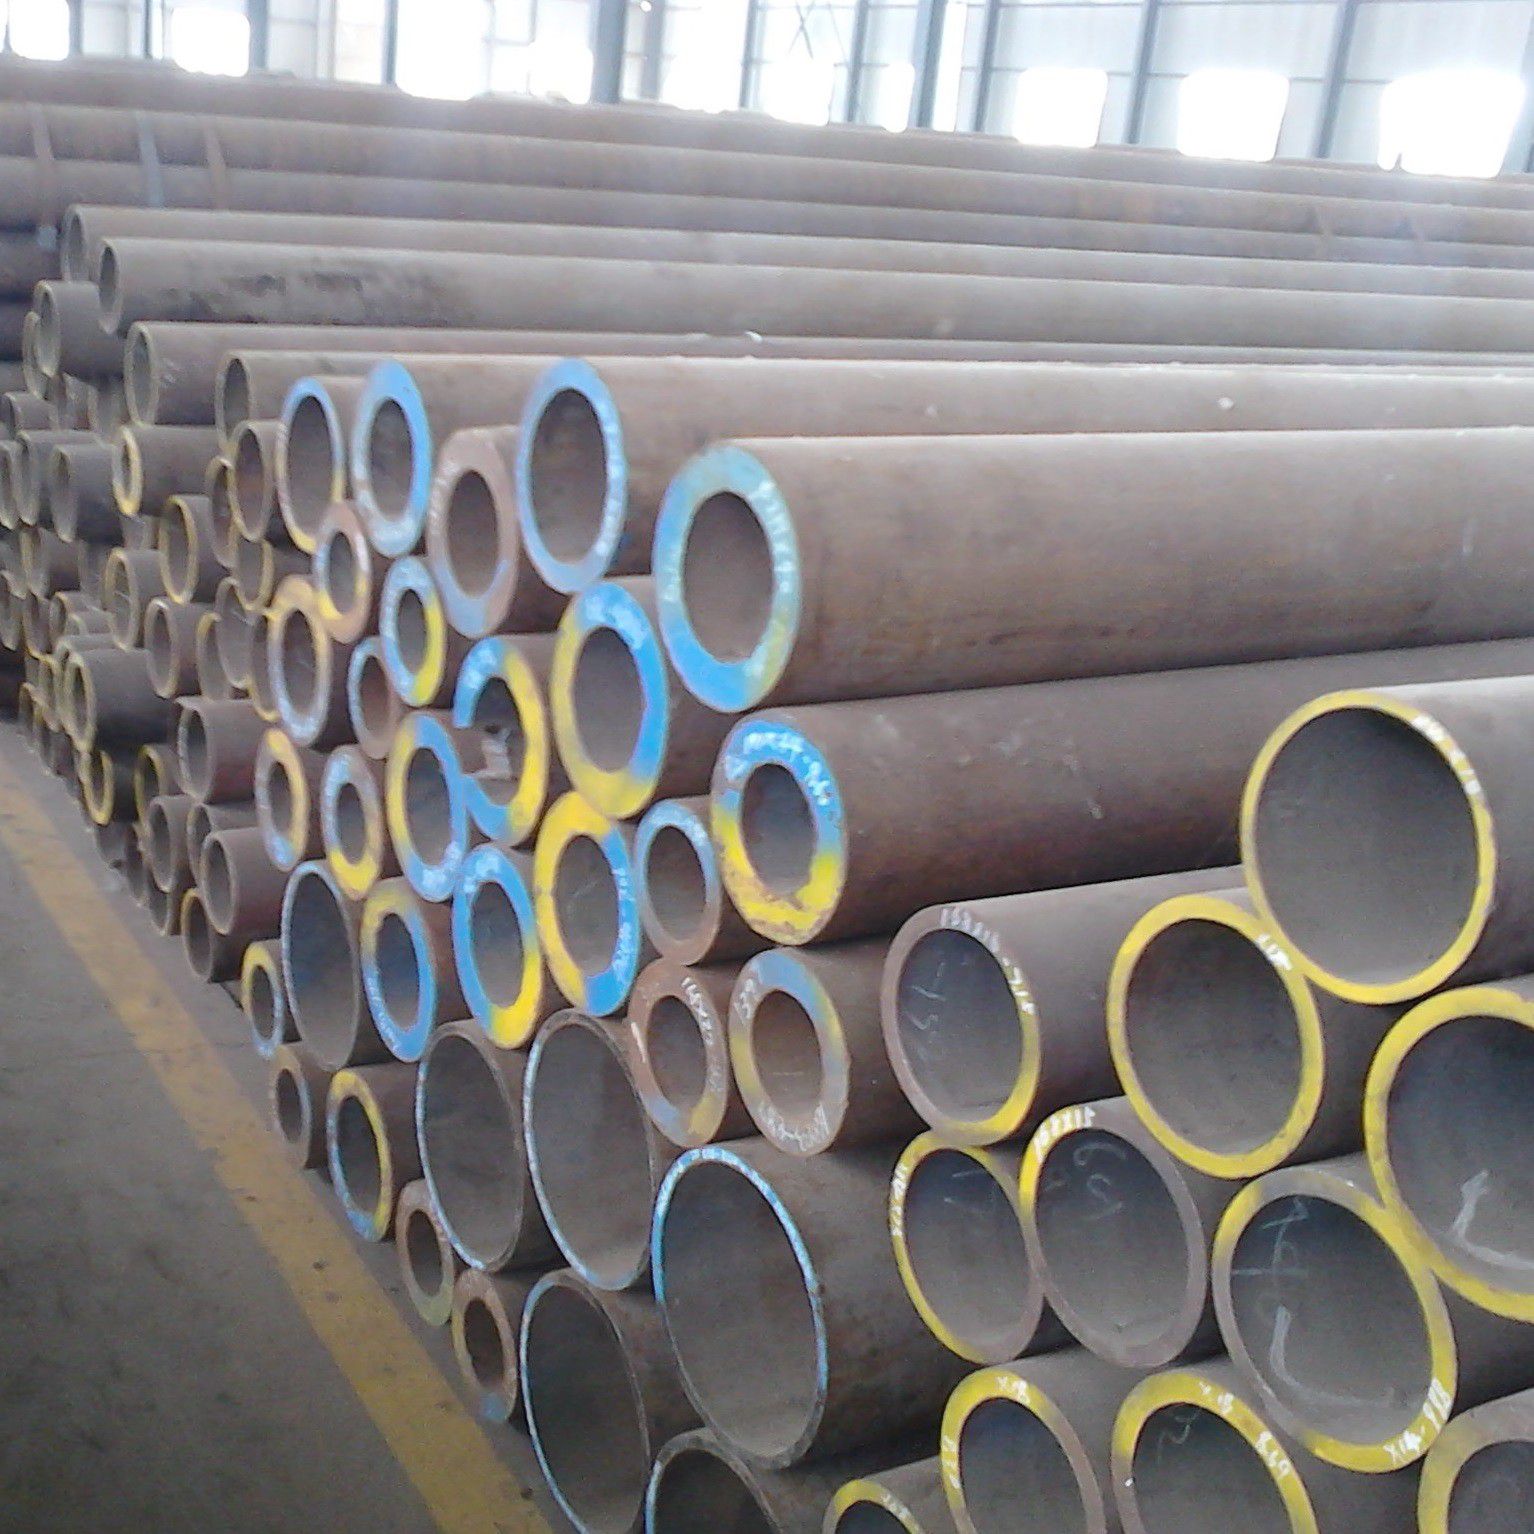 北京东城区空气预热器用耐酸钢管需求疲软市场价格跌势再袭